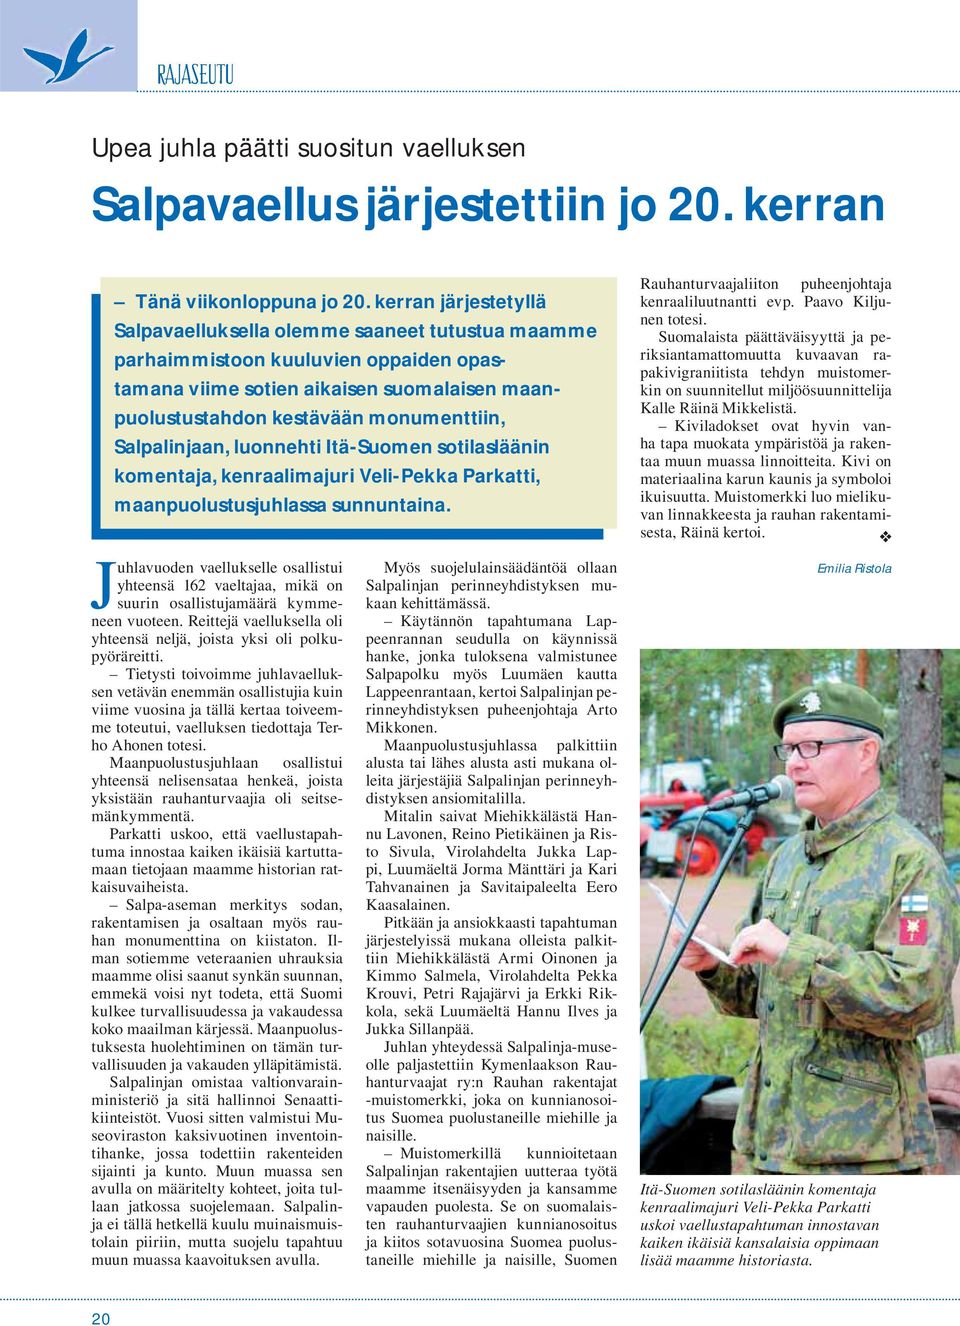 Salpalinjaan, luonnehti Itä-Suomen sotilasläänin komentaja, kenraalimajuri Veli-Pekka Parkatti, maanpuolustusjuhlassa sunnuntaina.